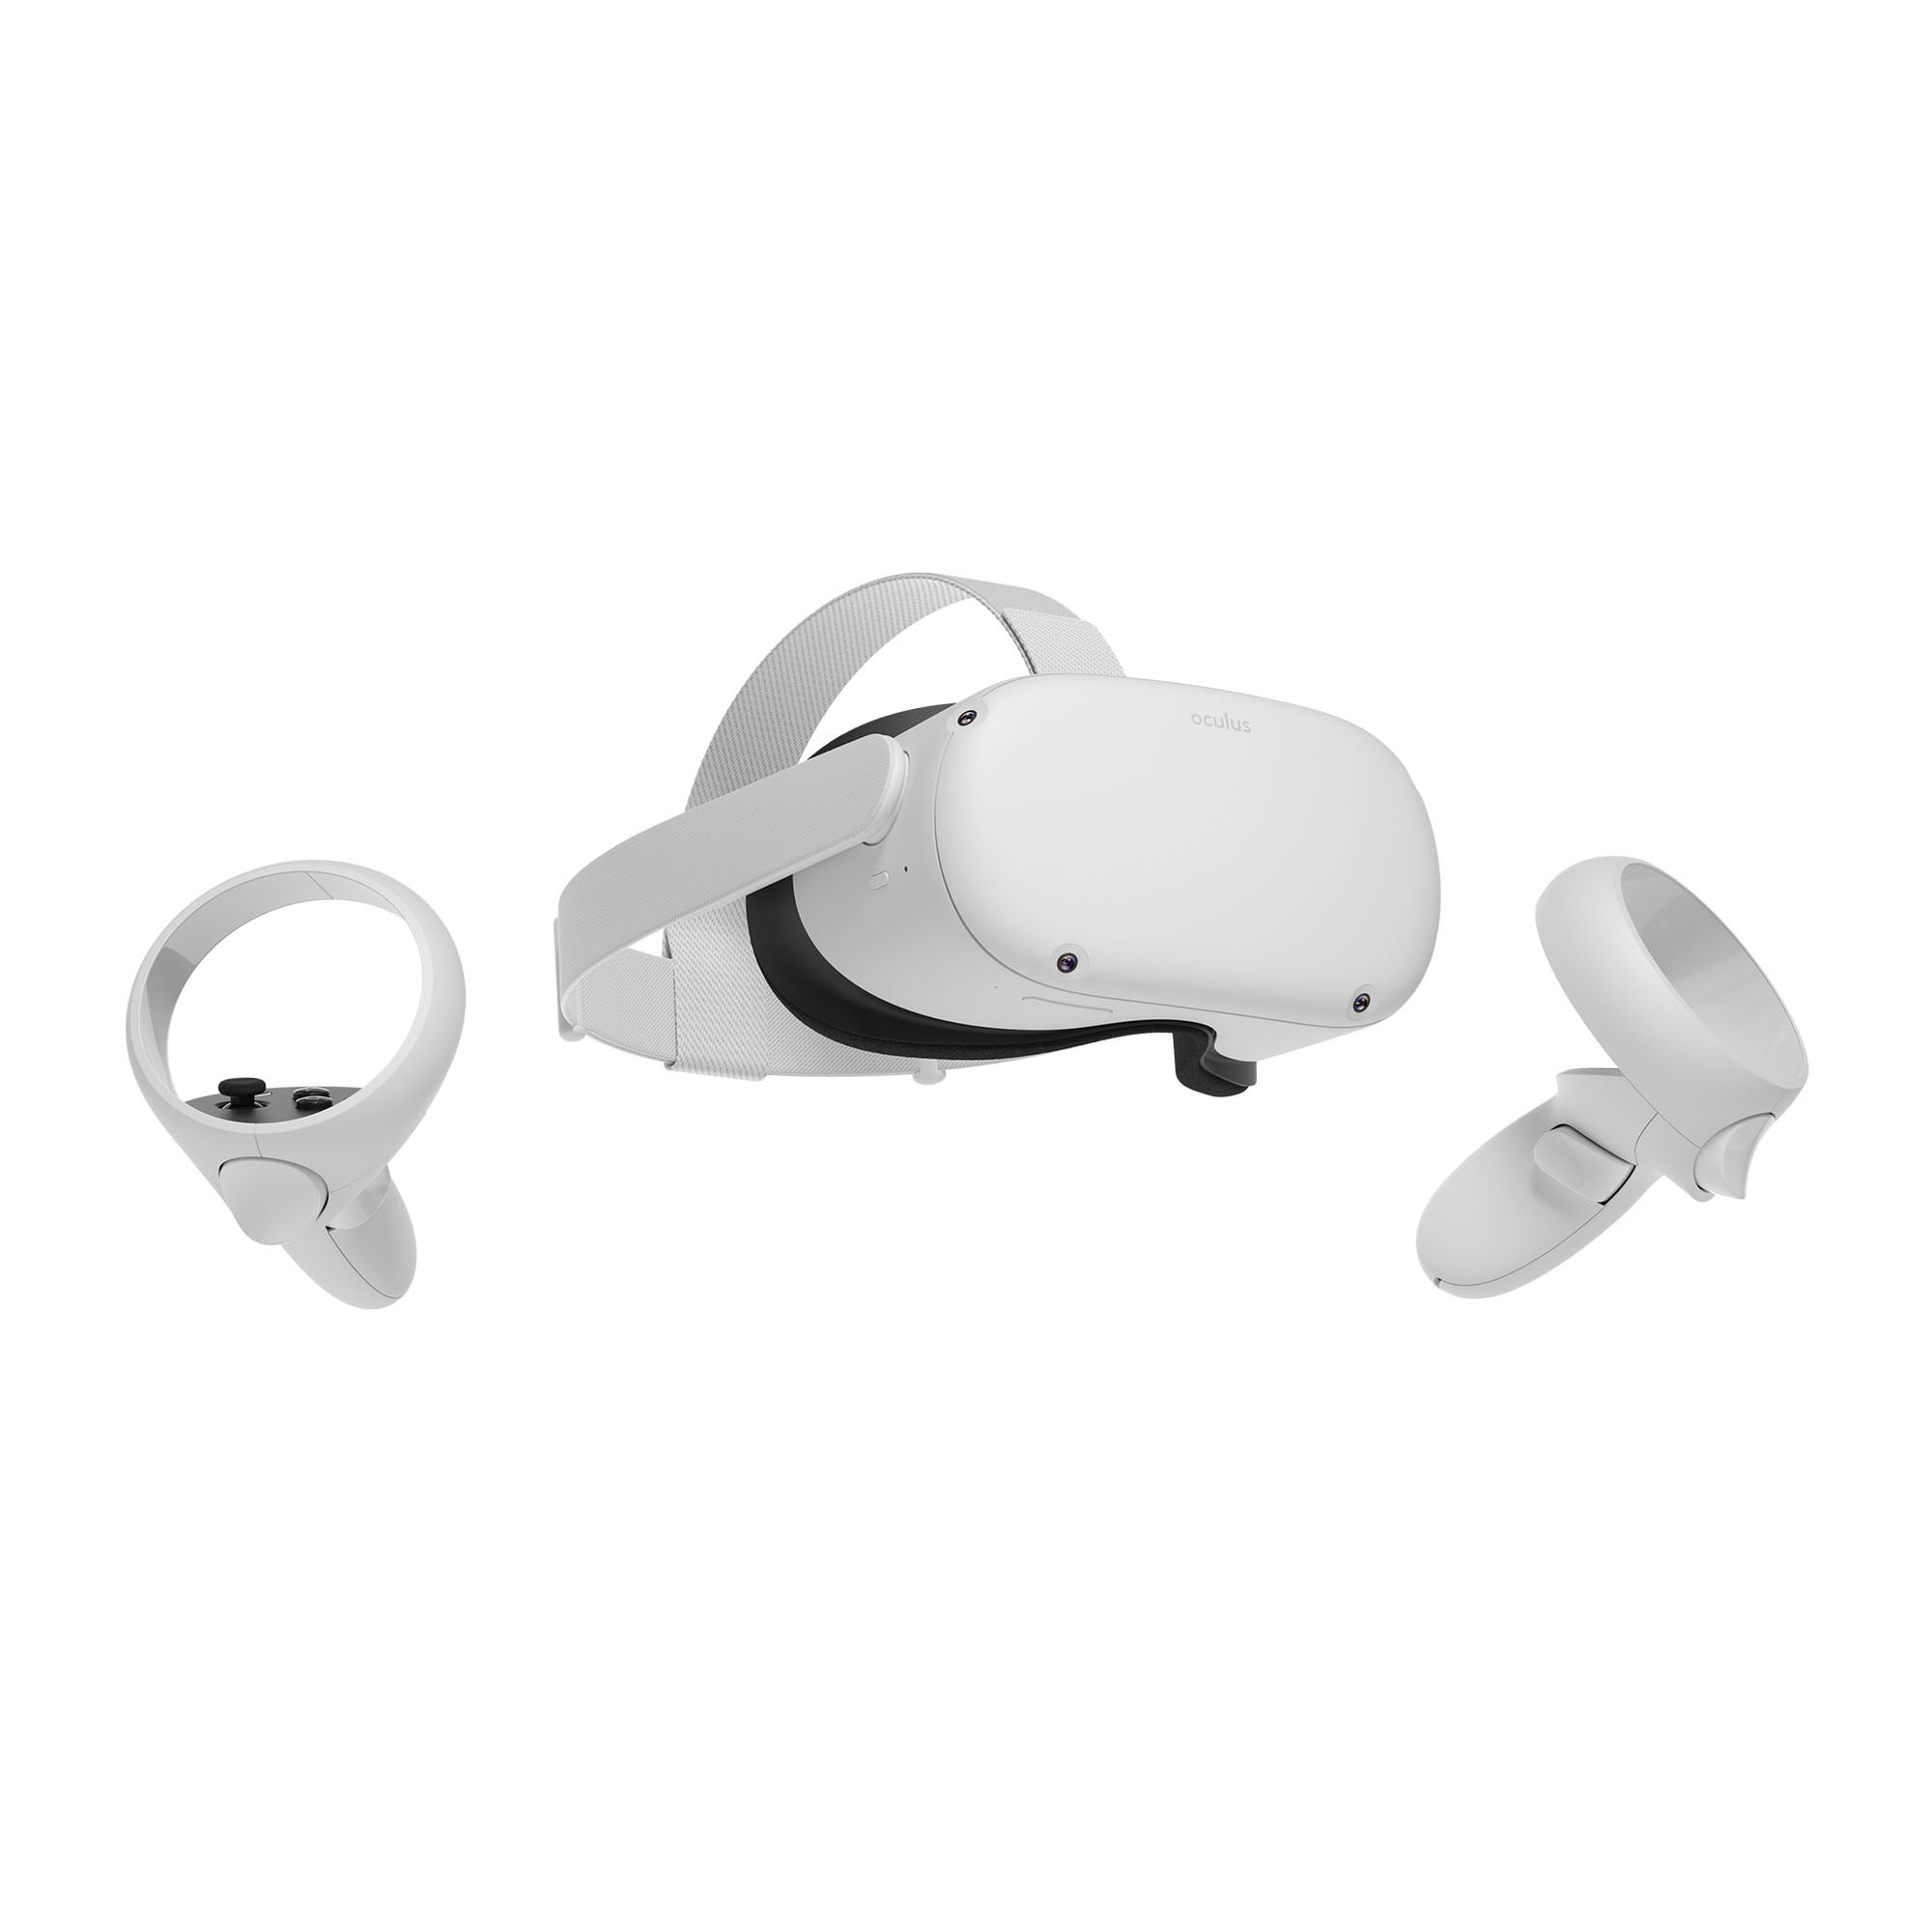 テレビ/映像機器 その他 Meta Quest 2 (Oculus) — Advanced All-In-One Virtual Reality Headset — 256  GB with Resident Evil 4